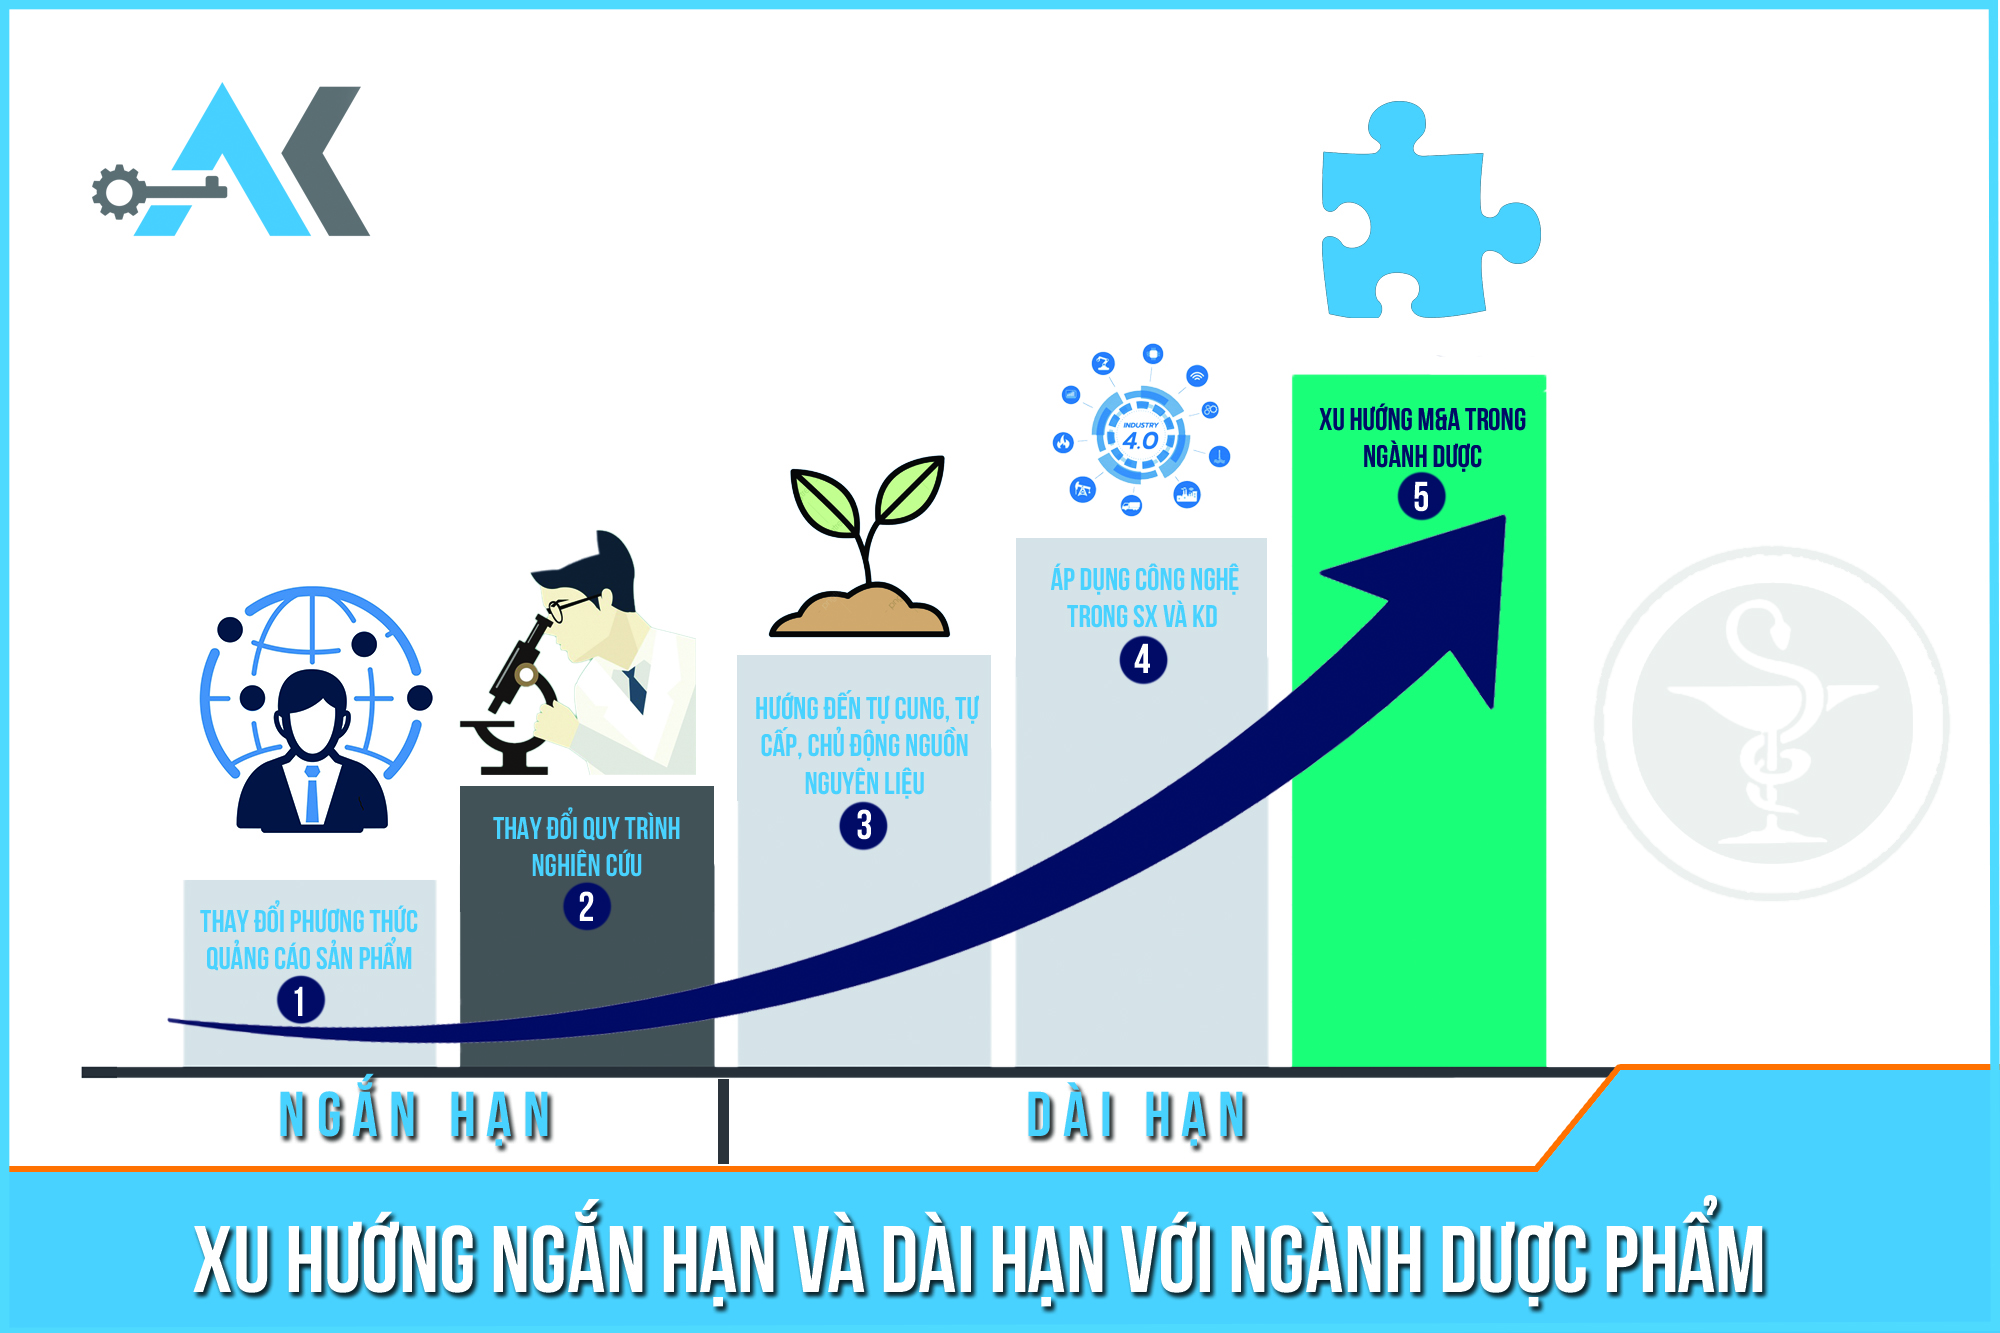 Ngành Dược của Việt Nam được dự đoán có xu hướng tiếp tục tăng vào năm 2021. Bài viết dưới đây tổng hợp các xu hướng ngắn hạn và dài hạn của ngành Dược trong những năm tới.